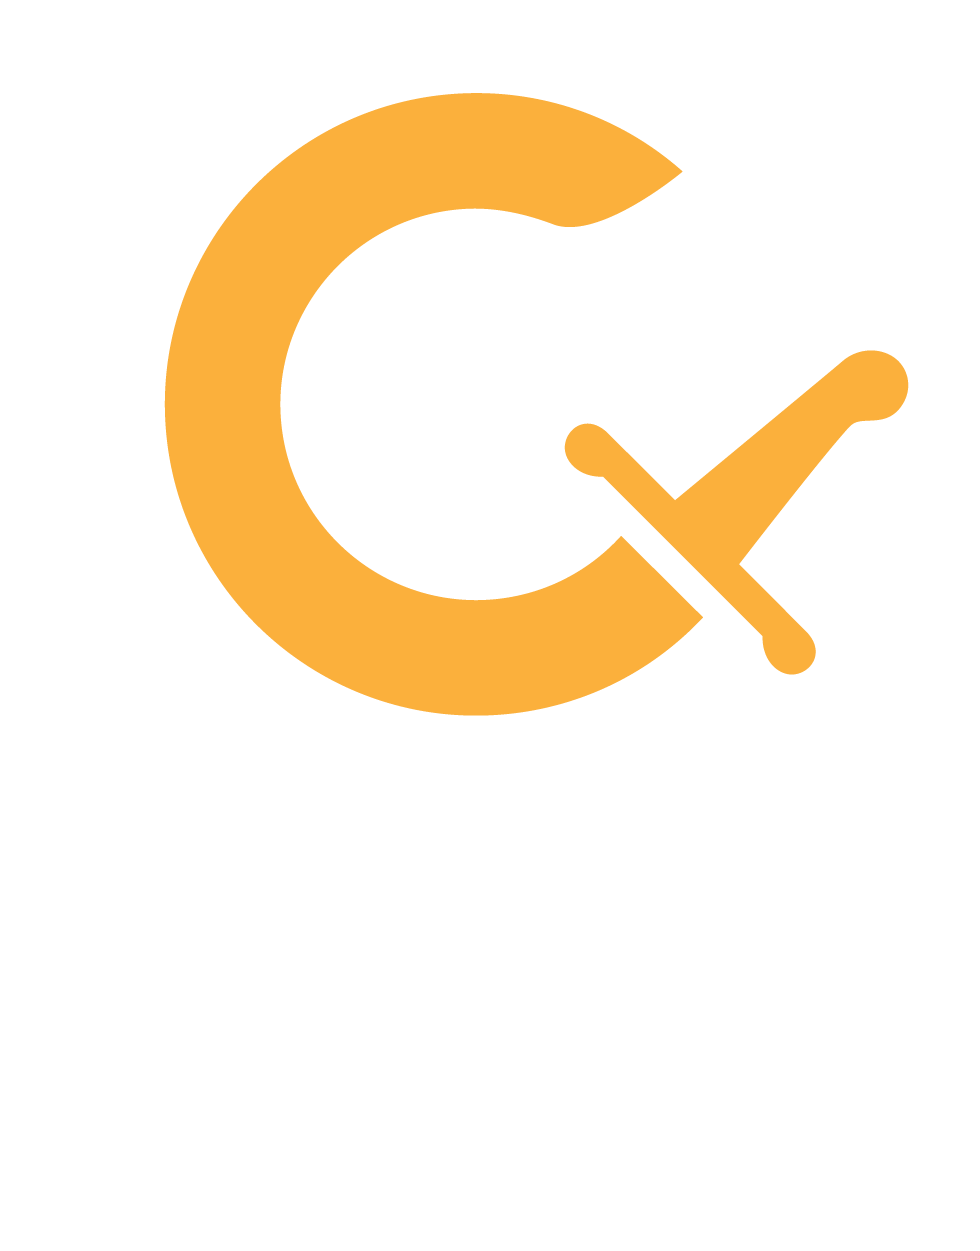 cossacklabs